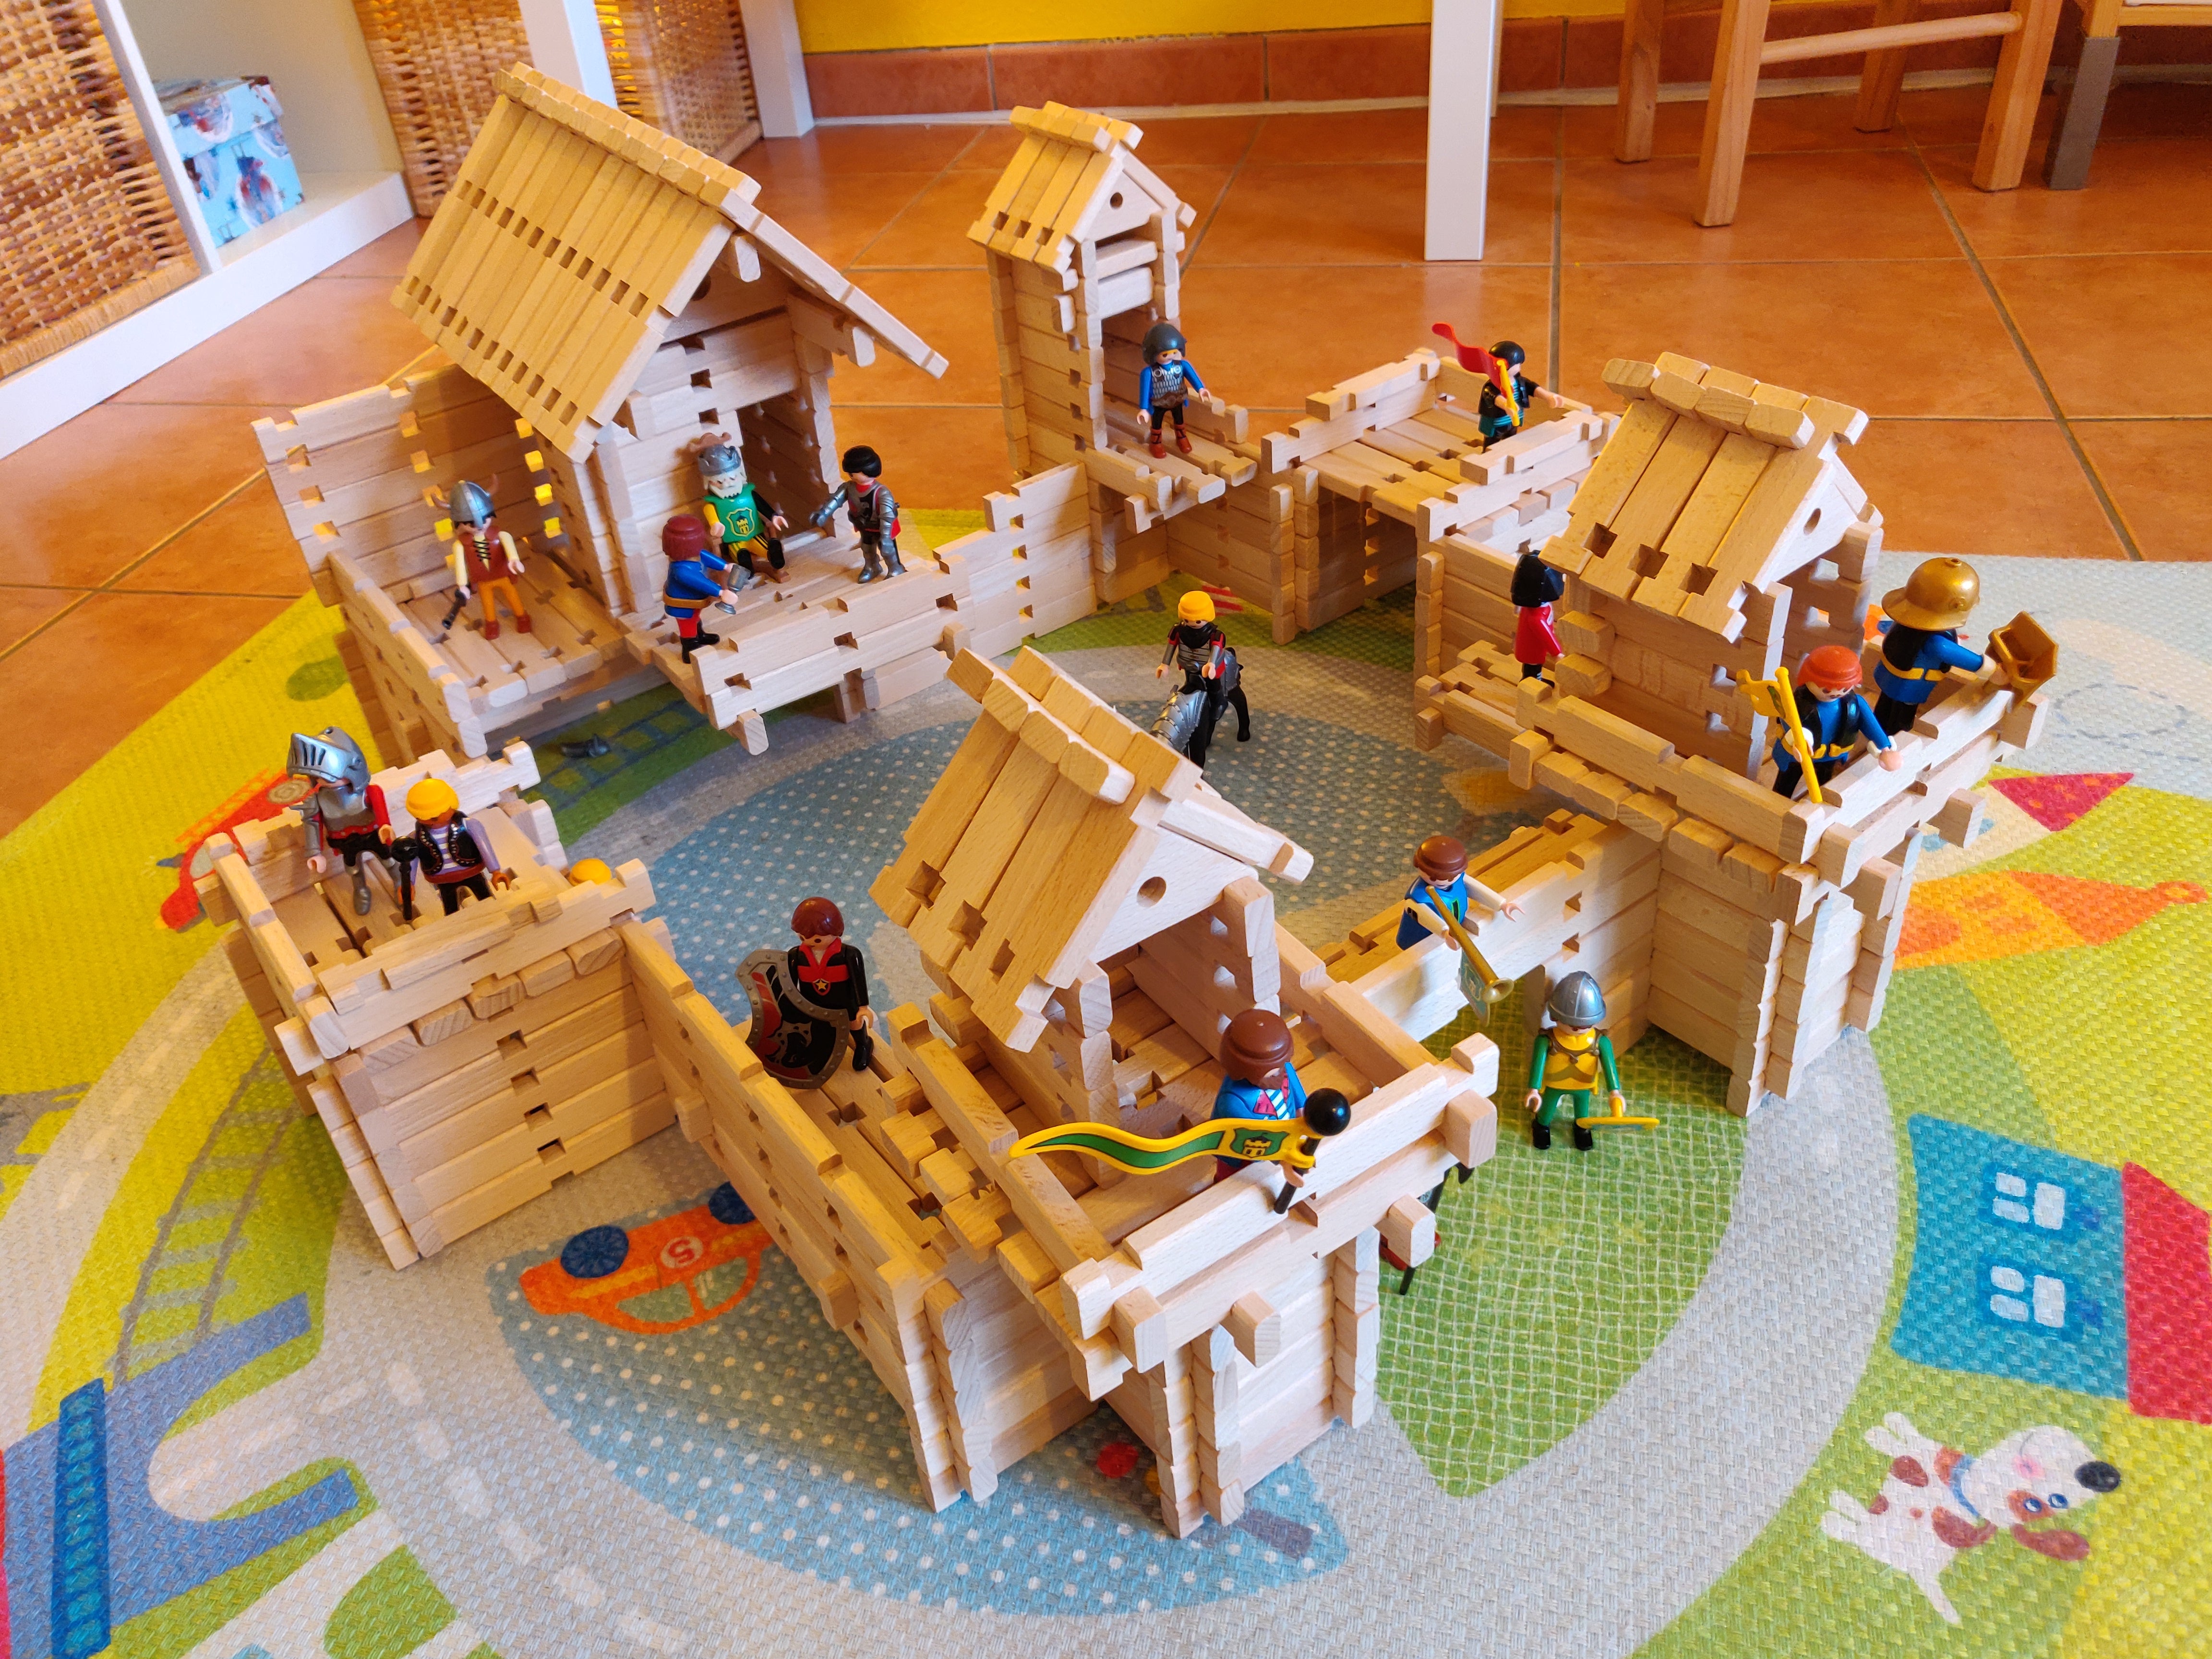 LOGO-BURG leksakssats i trä, byggklossar i trä, byggklossar i trä